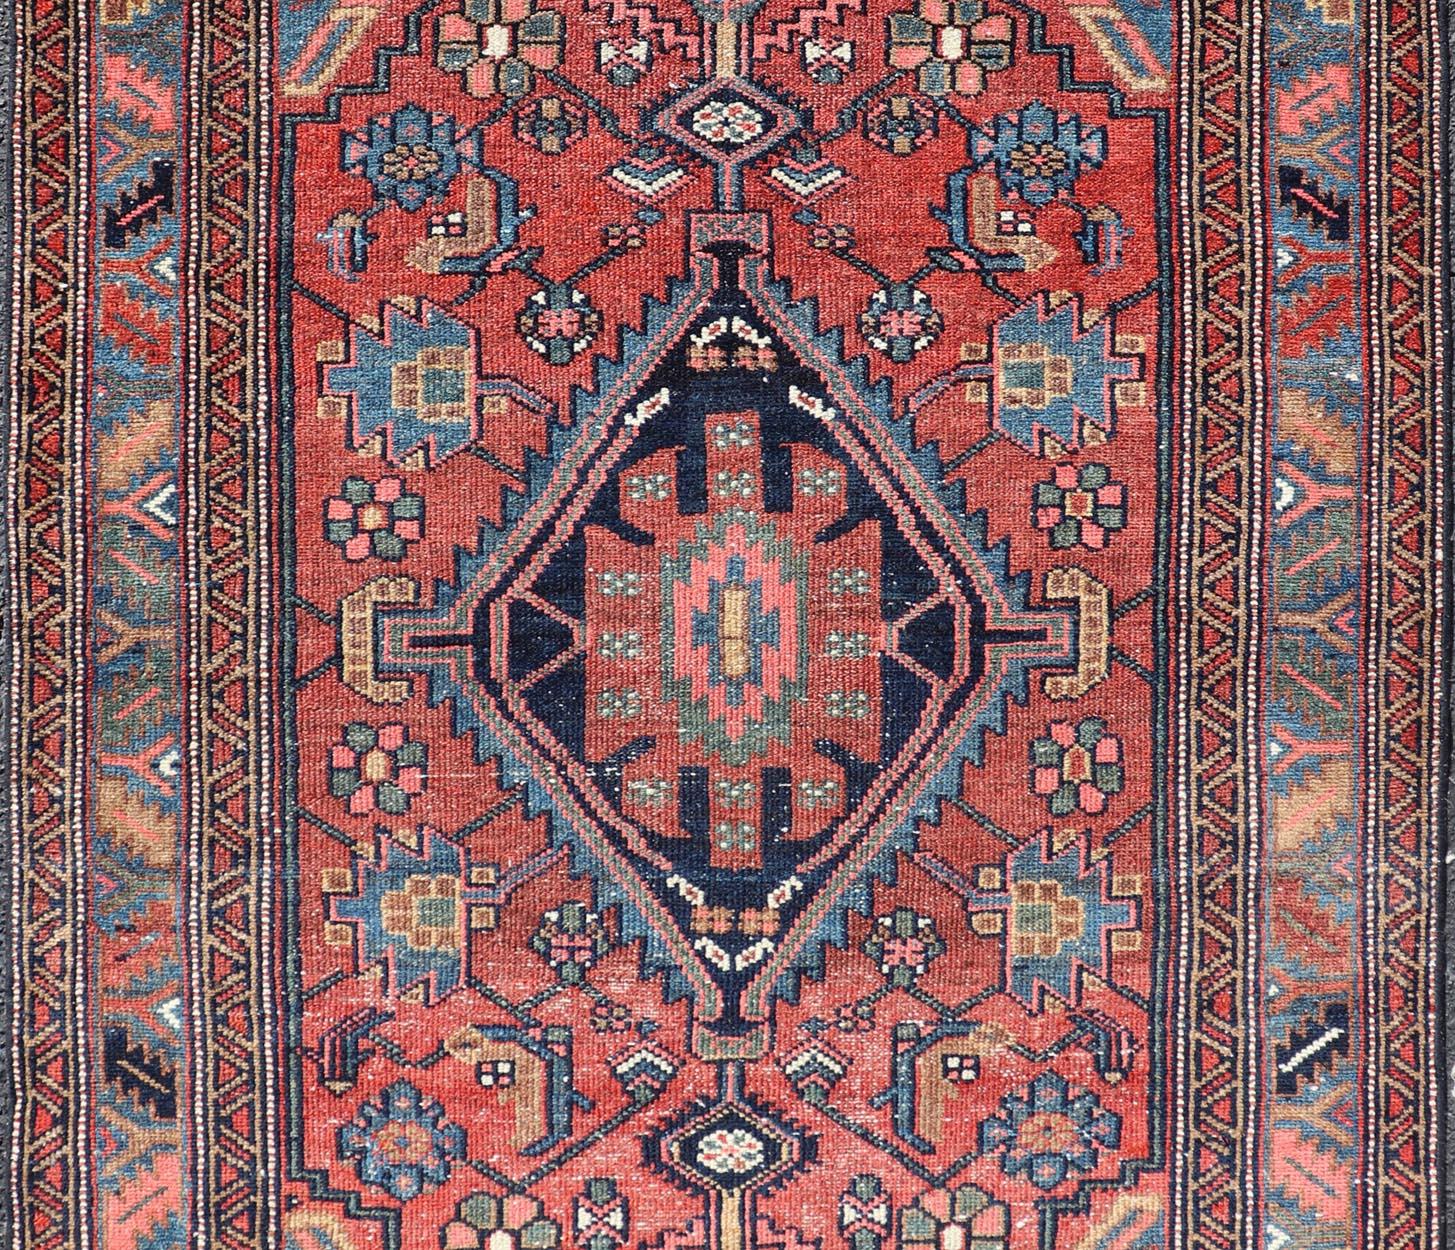 Ancien tapis persan Hamadan aux couleurs riches et au design géométrique, Keivan Woven Arts / tapis EMB-9602-P13506, pays d'origine / type : Iran / Hamadan, circa 1920.

Mesures : 3'5 x 6'3.